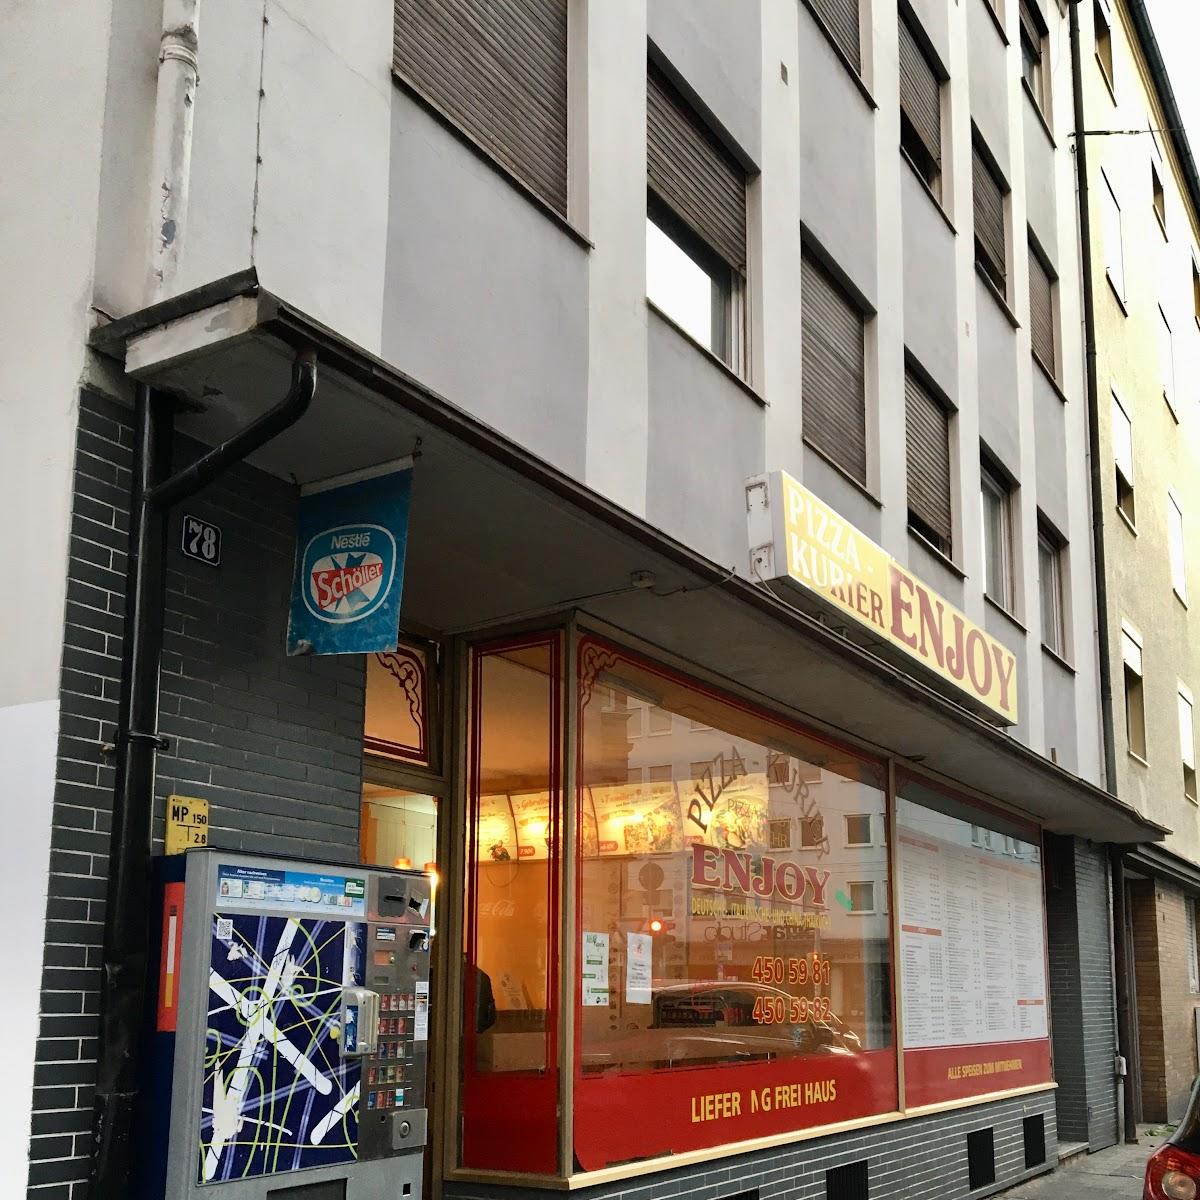 Restaurant "ENJOY PIZZA - AMERICAN STYLE" in Nürnberg